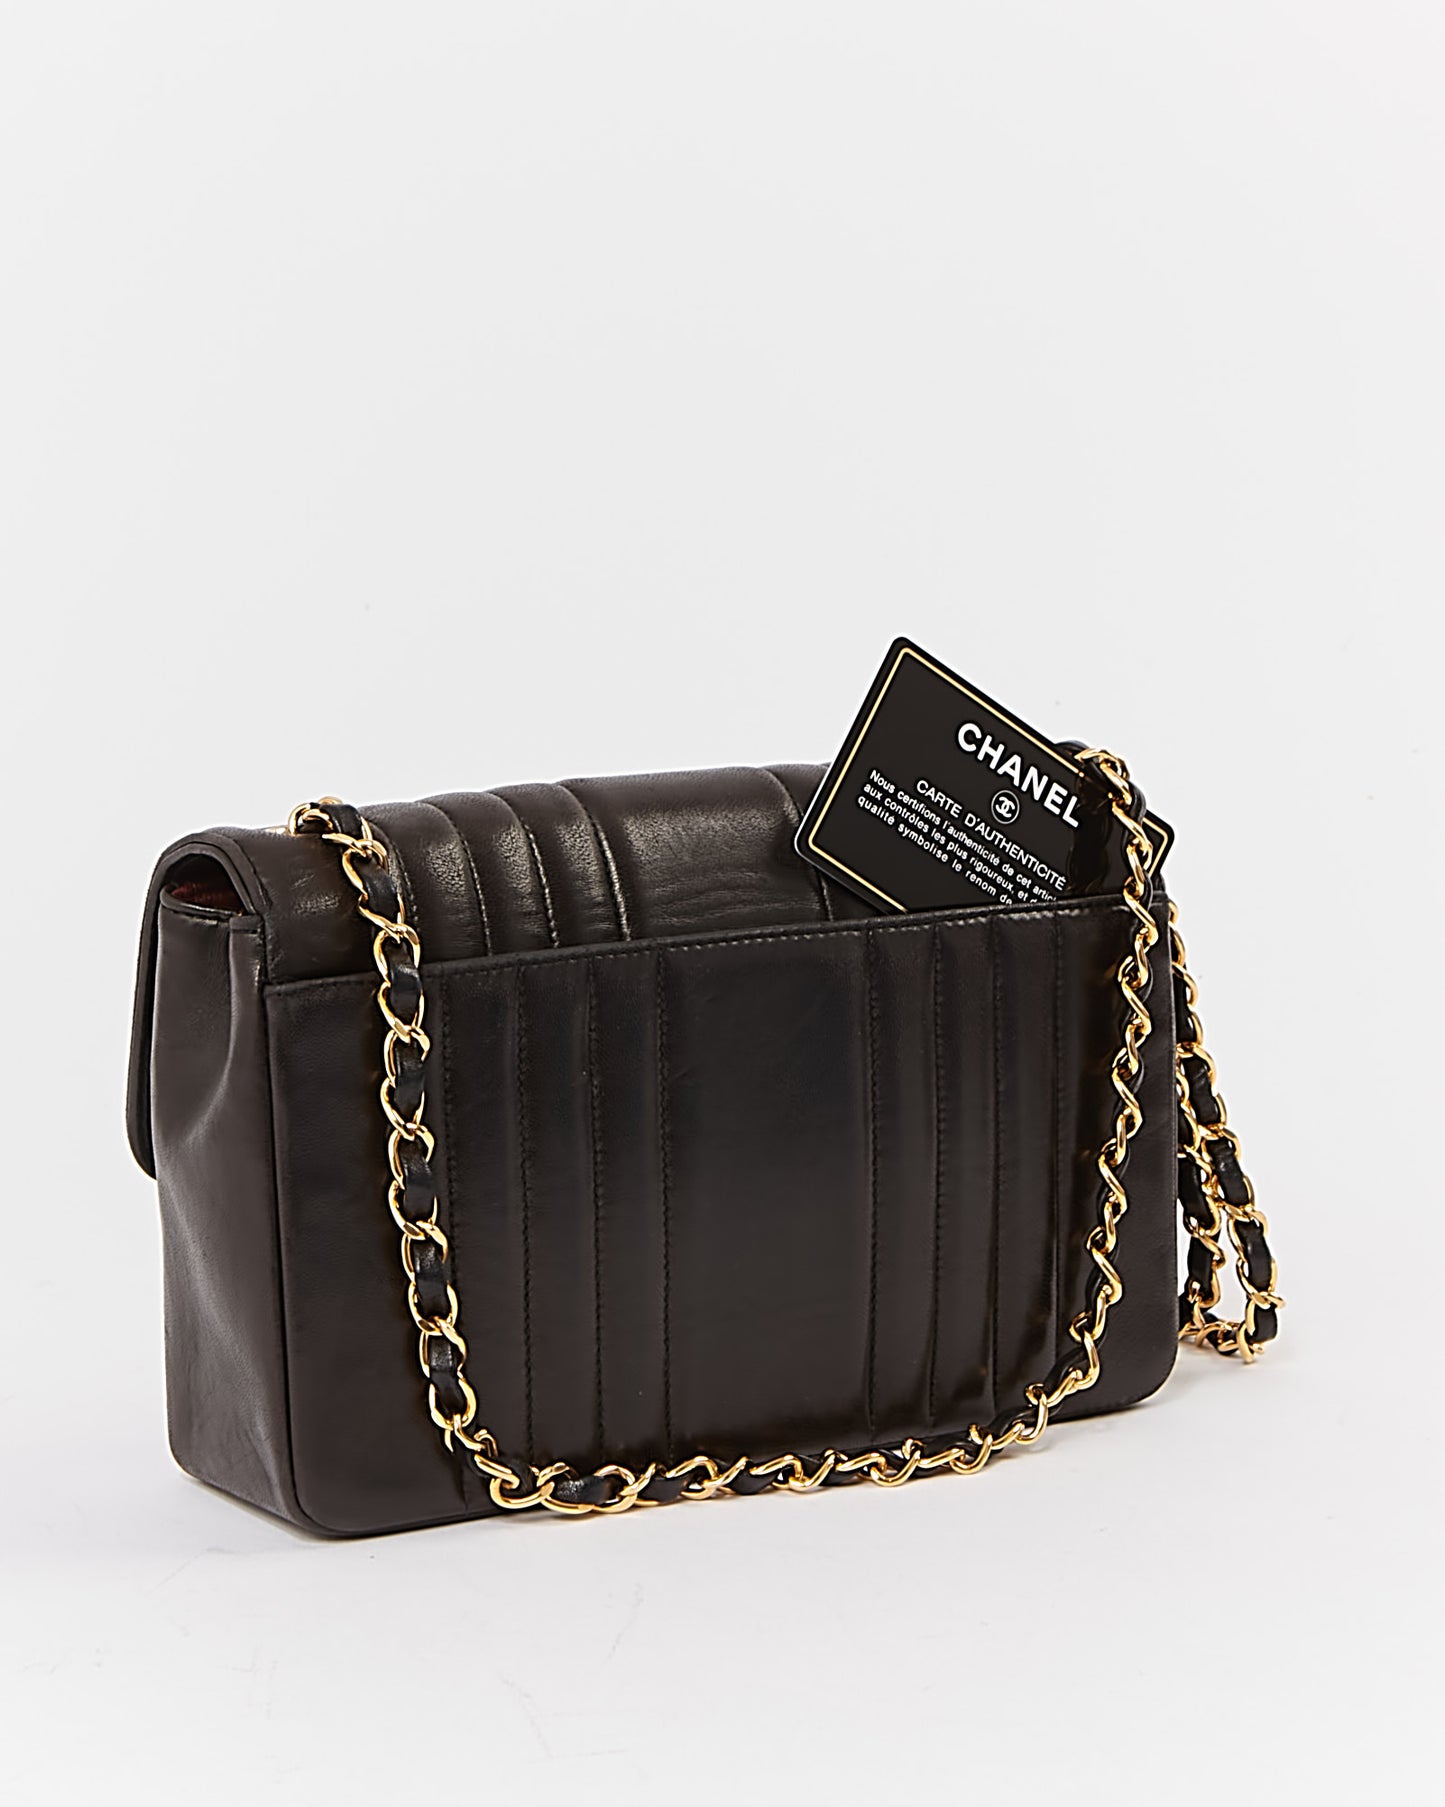 Chanel noir vertical matelassé en cuir d'agneau or 24 carats vintage petit sac classique à rabat unique